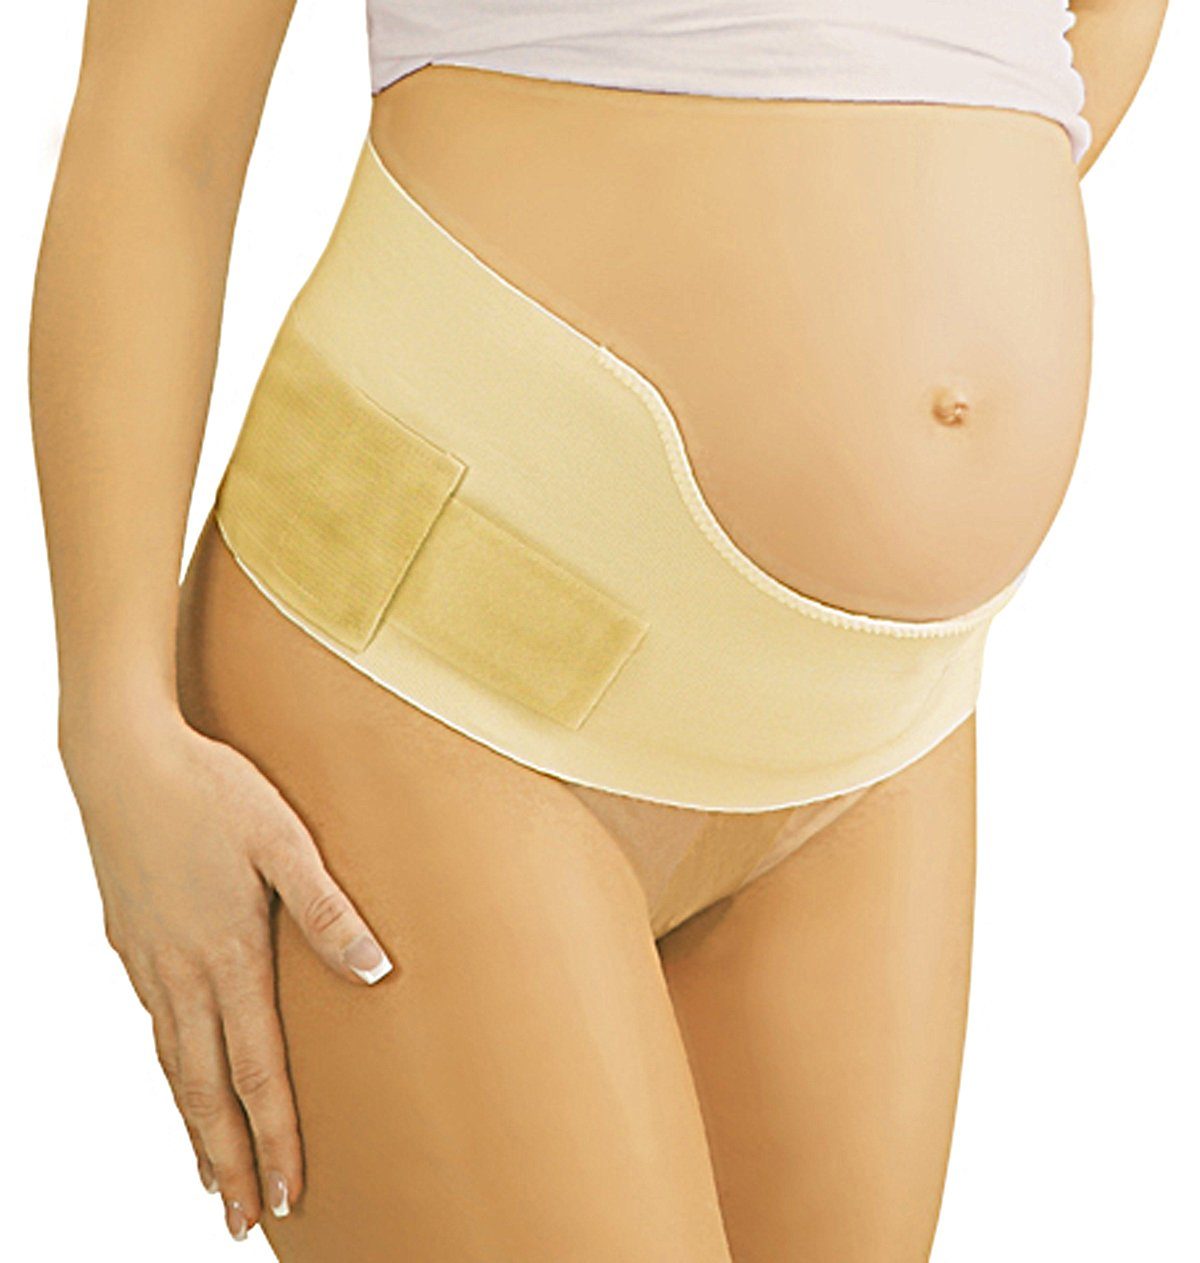 Tonus Elast Schwangerschaftsgürtel Schwangerschafts-Gurt Umstands-Gürtel Umstand Bauch Stütze Gerda9806 Mit Klettverschluss beige